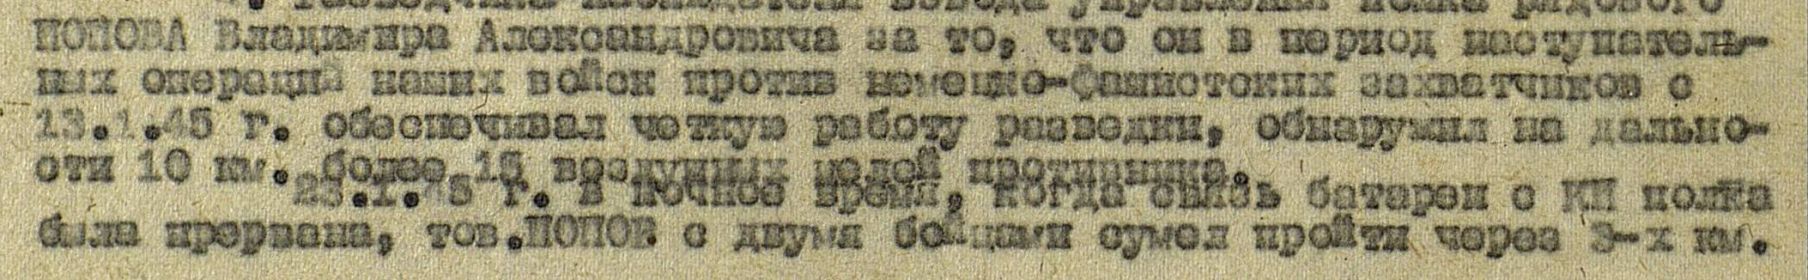 Приказ подразделения №: 2/н от: 23.02.1945  Издан: 1378 зенап 33 зенад РГК